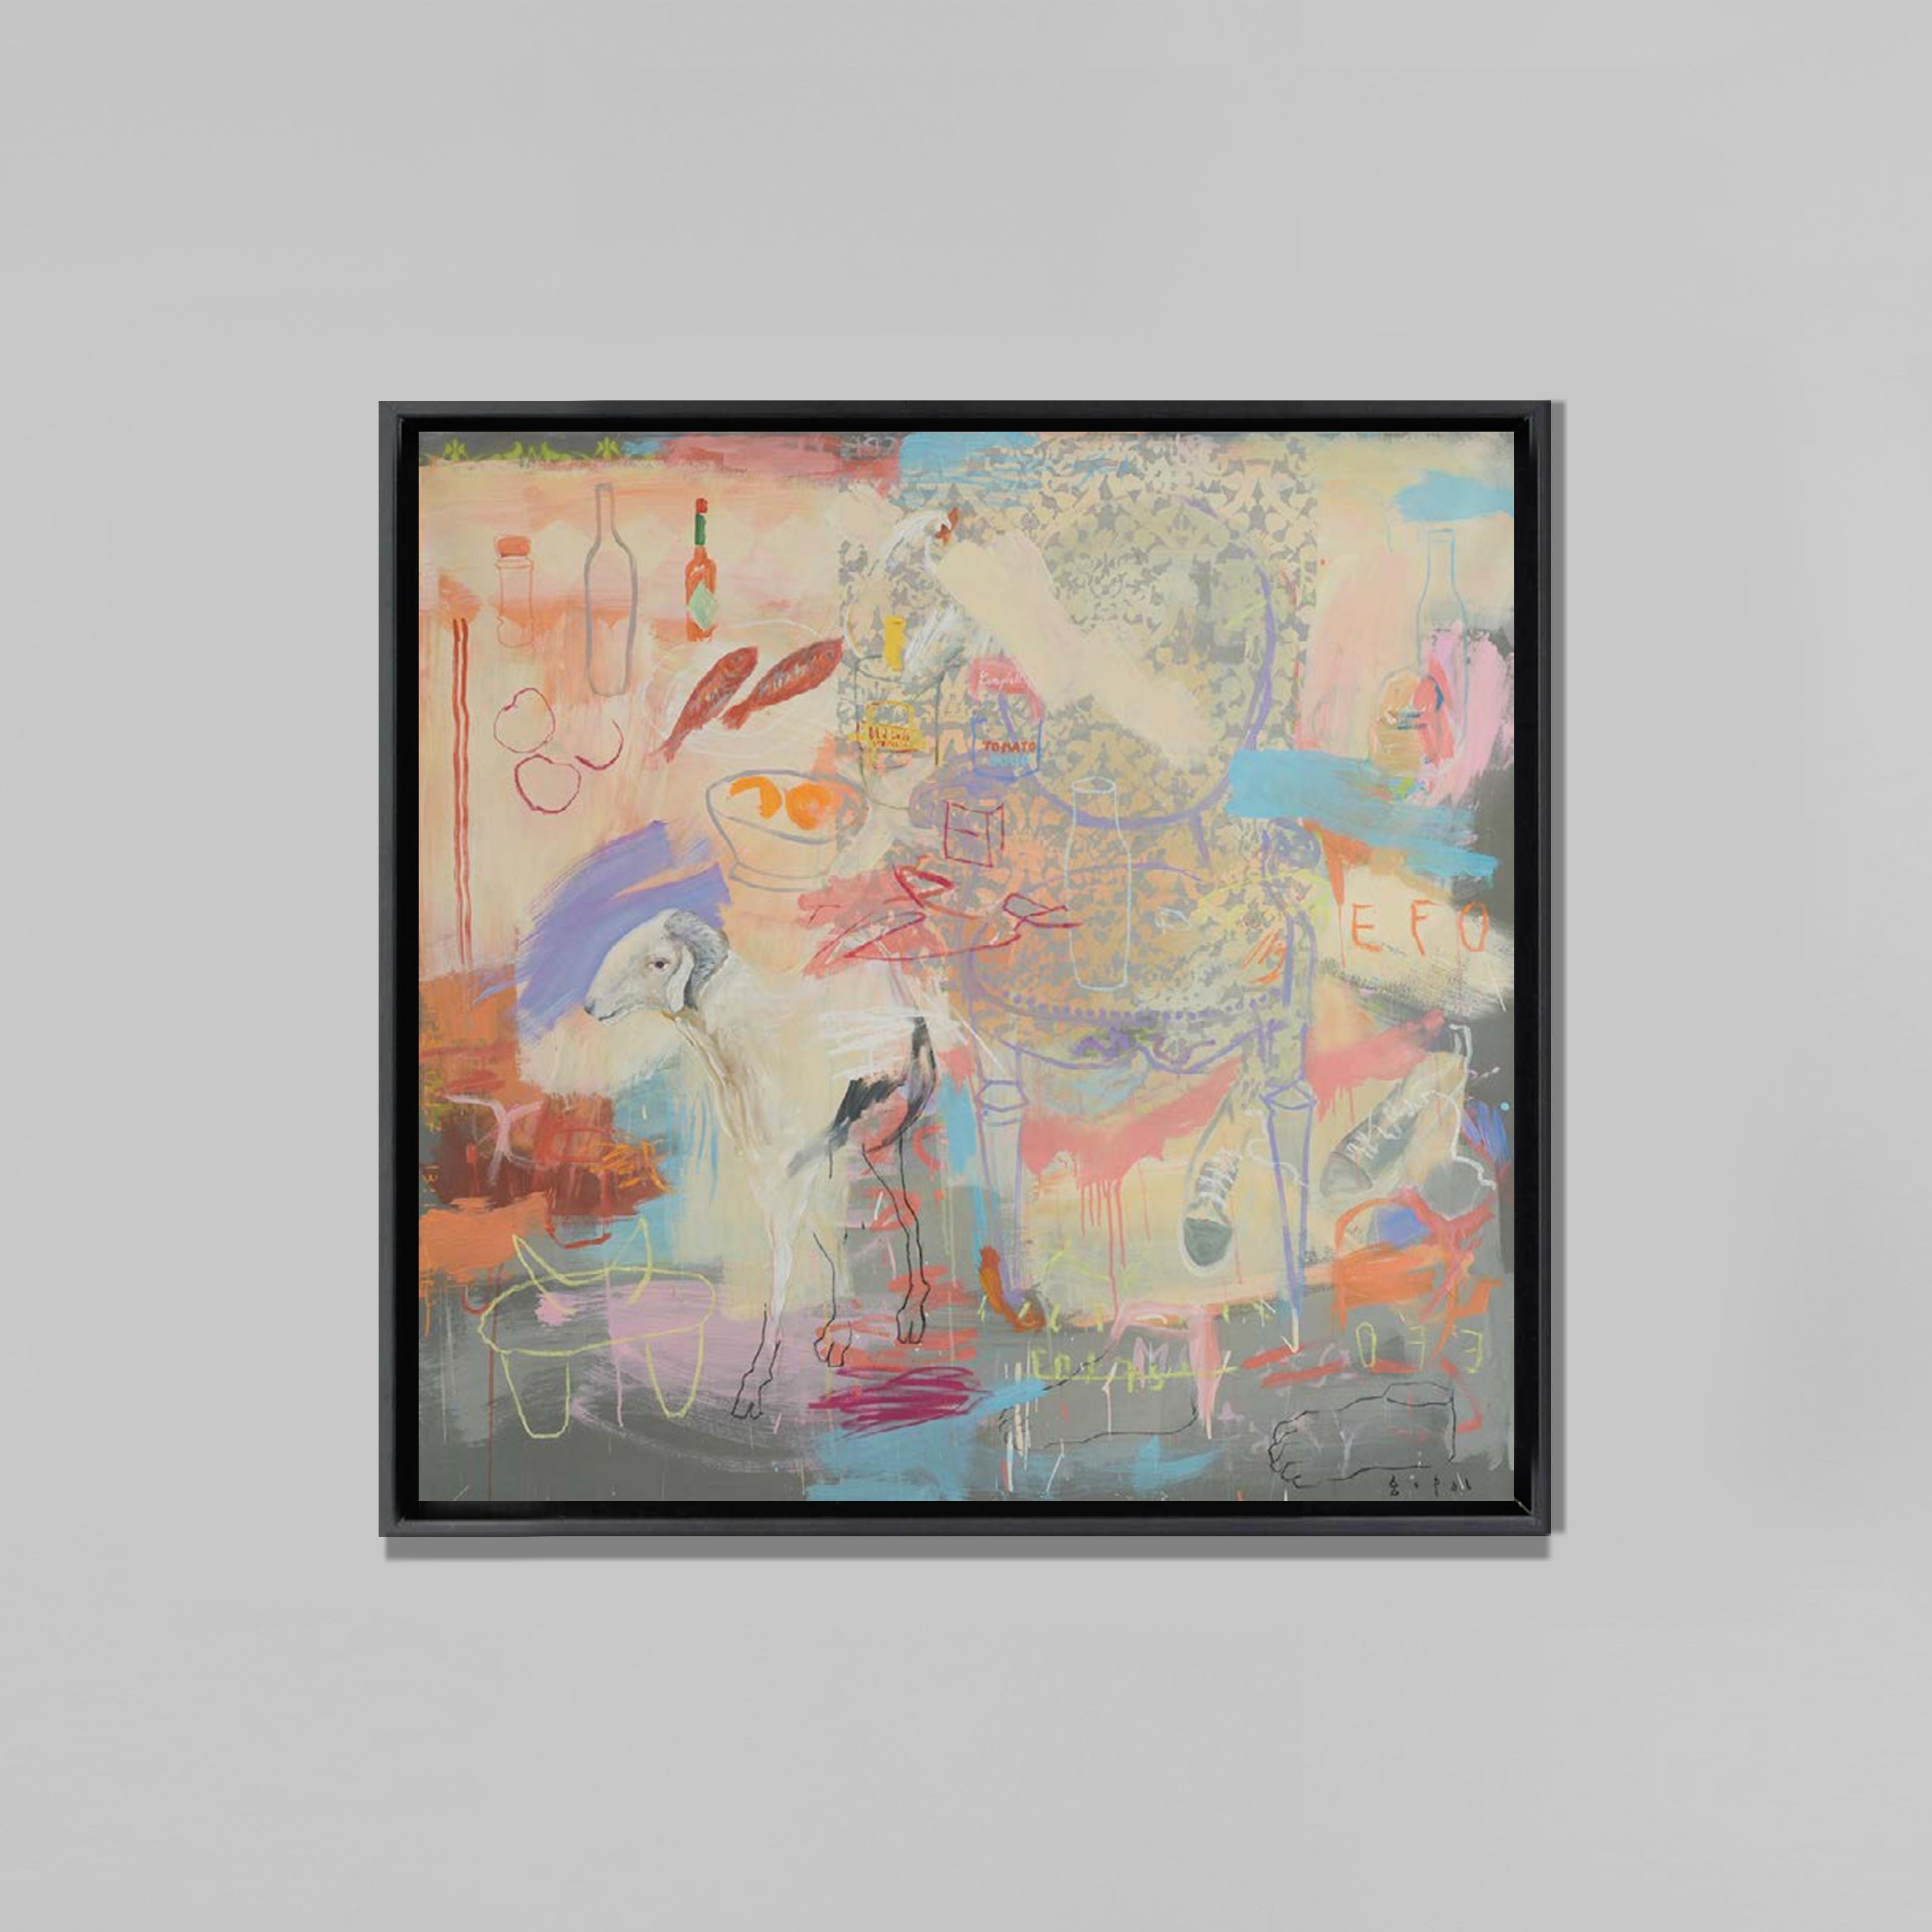 Glopal Dagnogo
Sans titre, 2017
Acrylique et pastel sur toile
150 x 150 cm